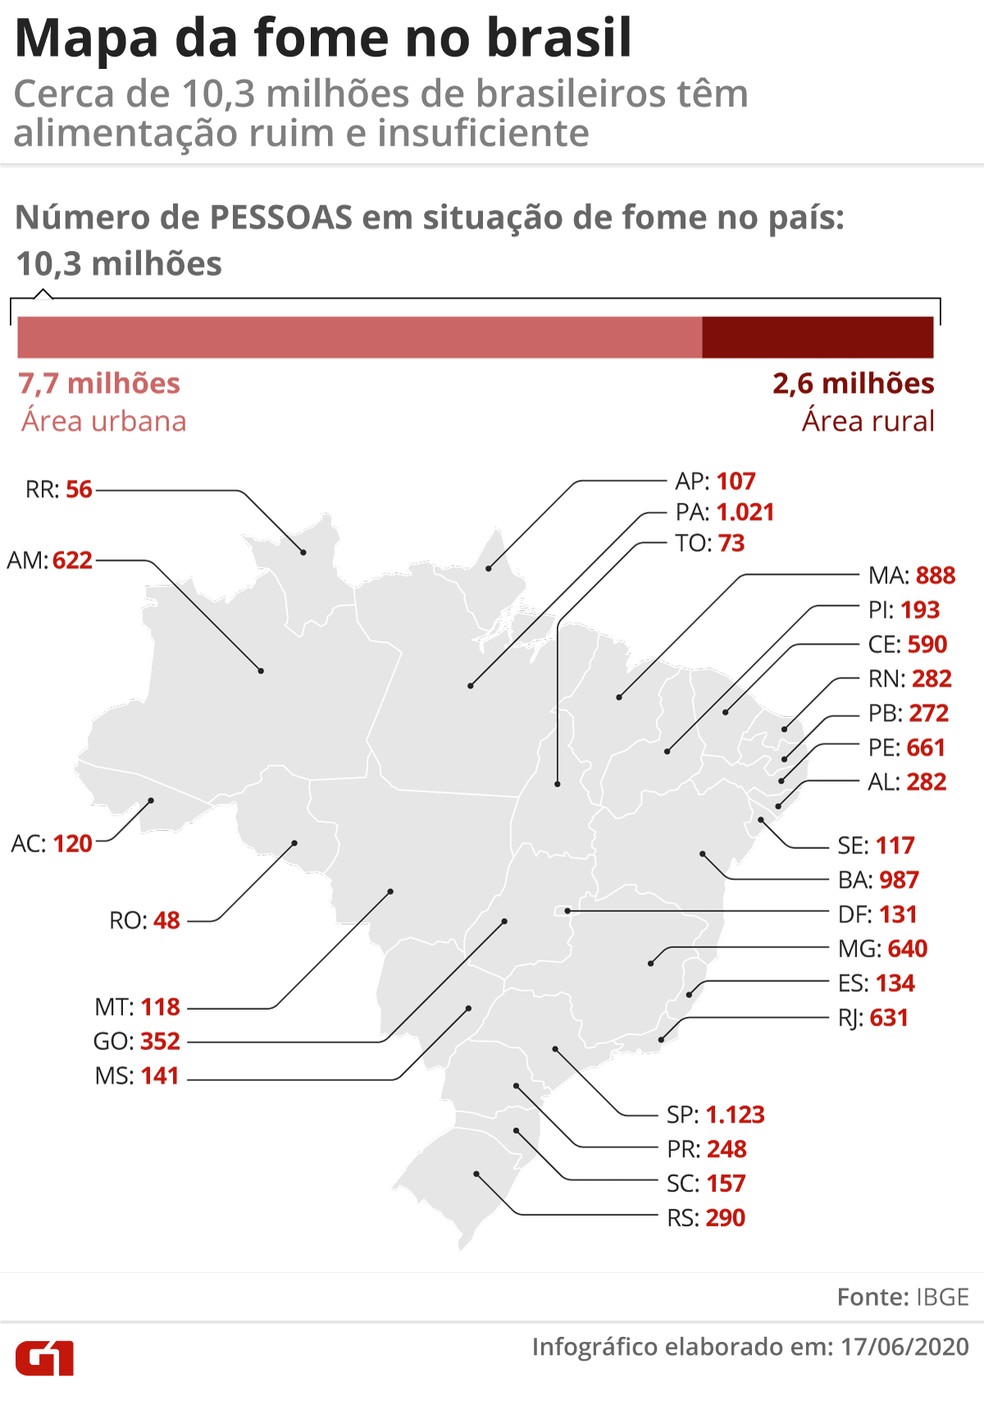 Dados do IBGE mostram o número de pessoas em situação de fome em cada unidade da federação — Foto: Economia/G1